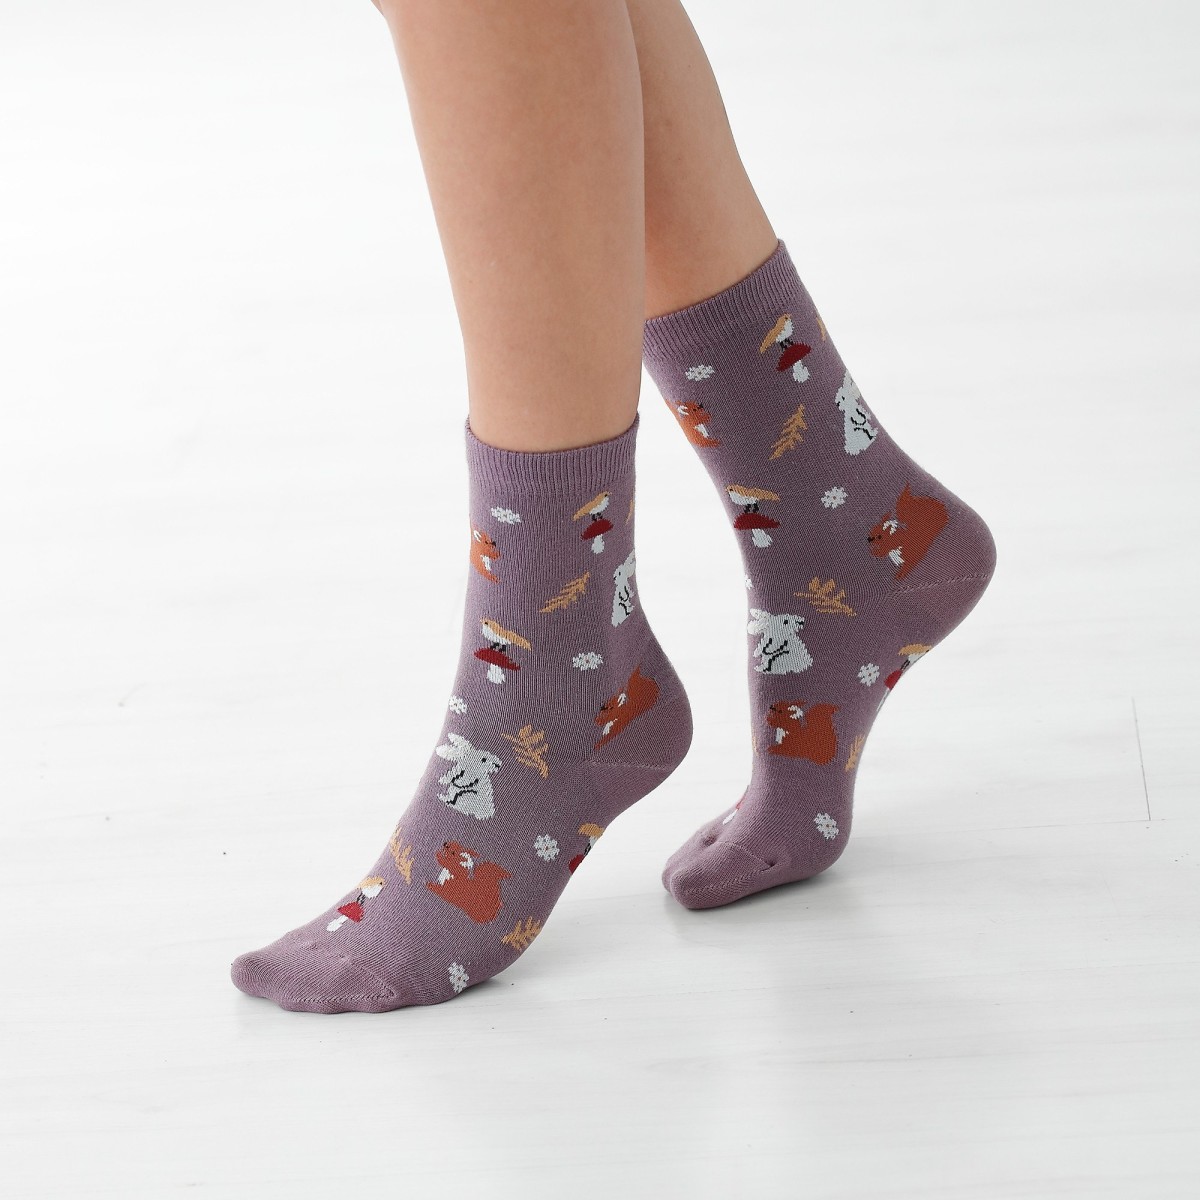 Blancheporte Sada 4 párů ponožek se sladěným motivem les karamelováfialová 3538